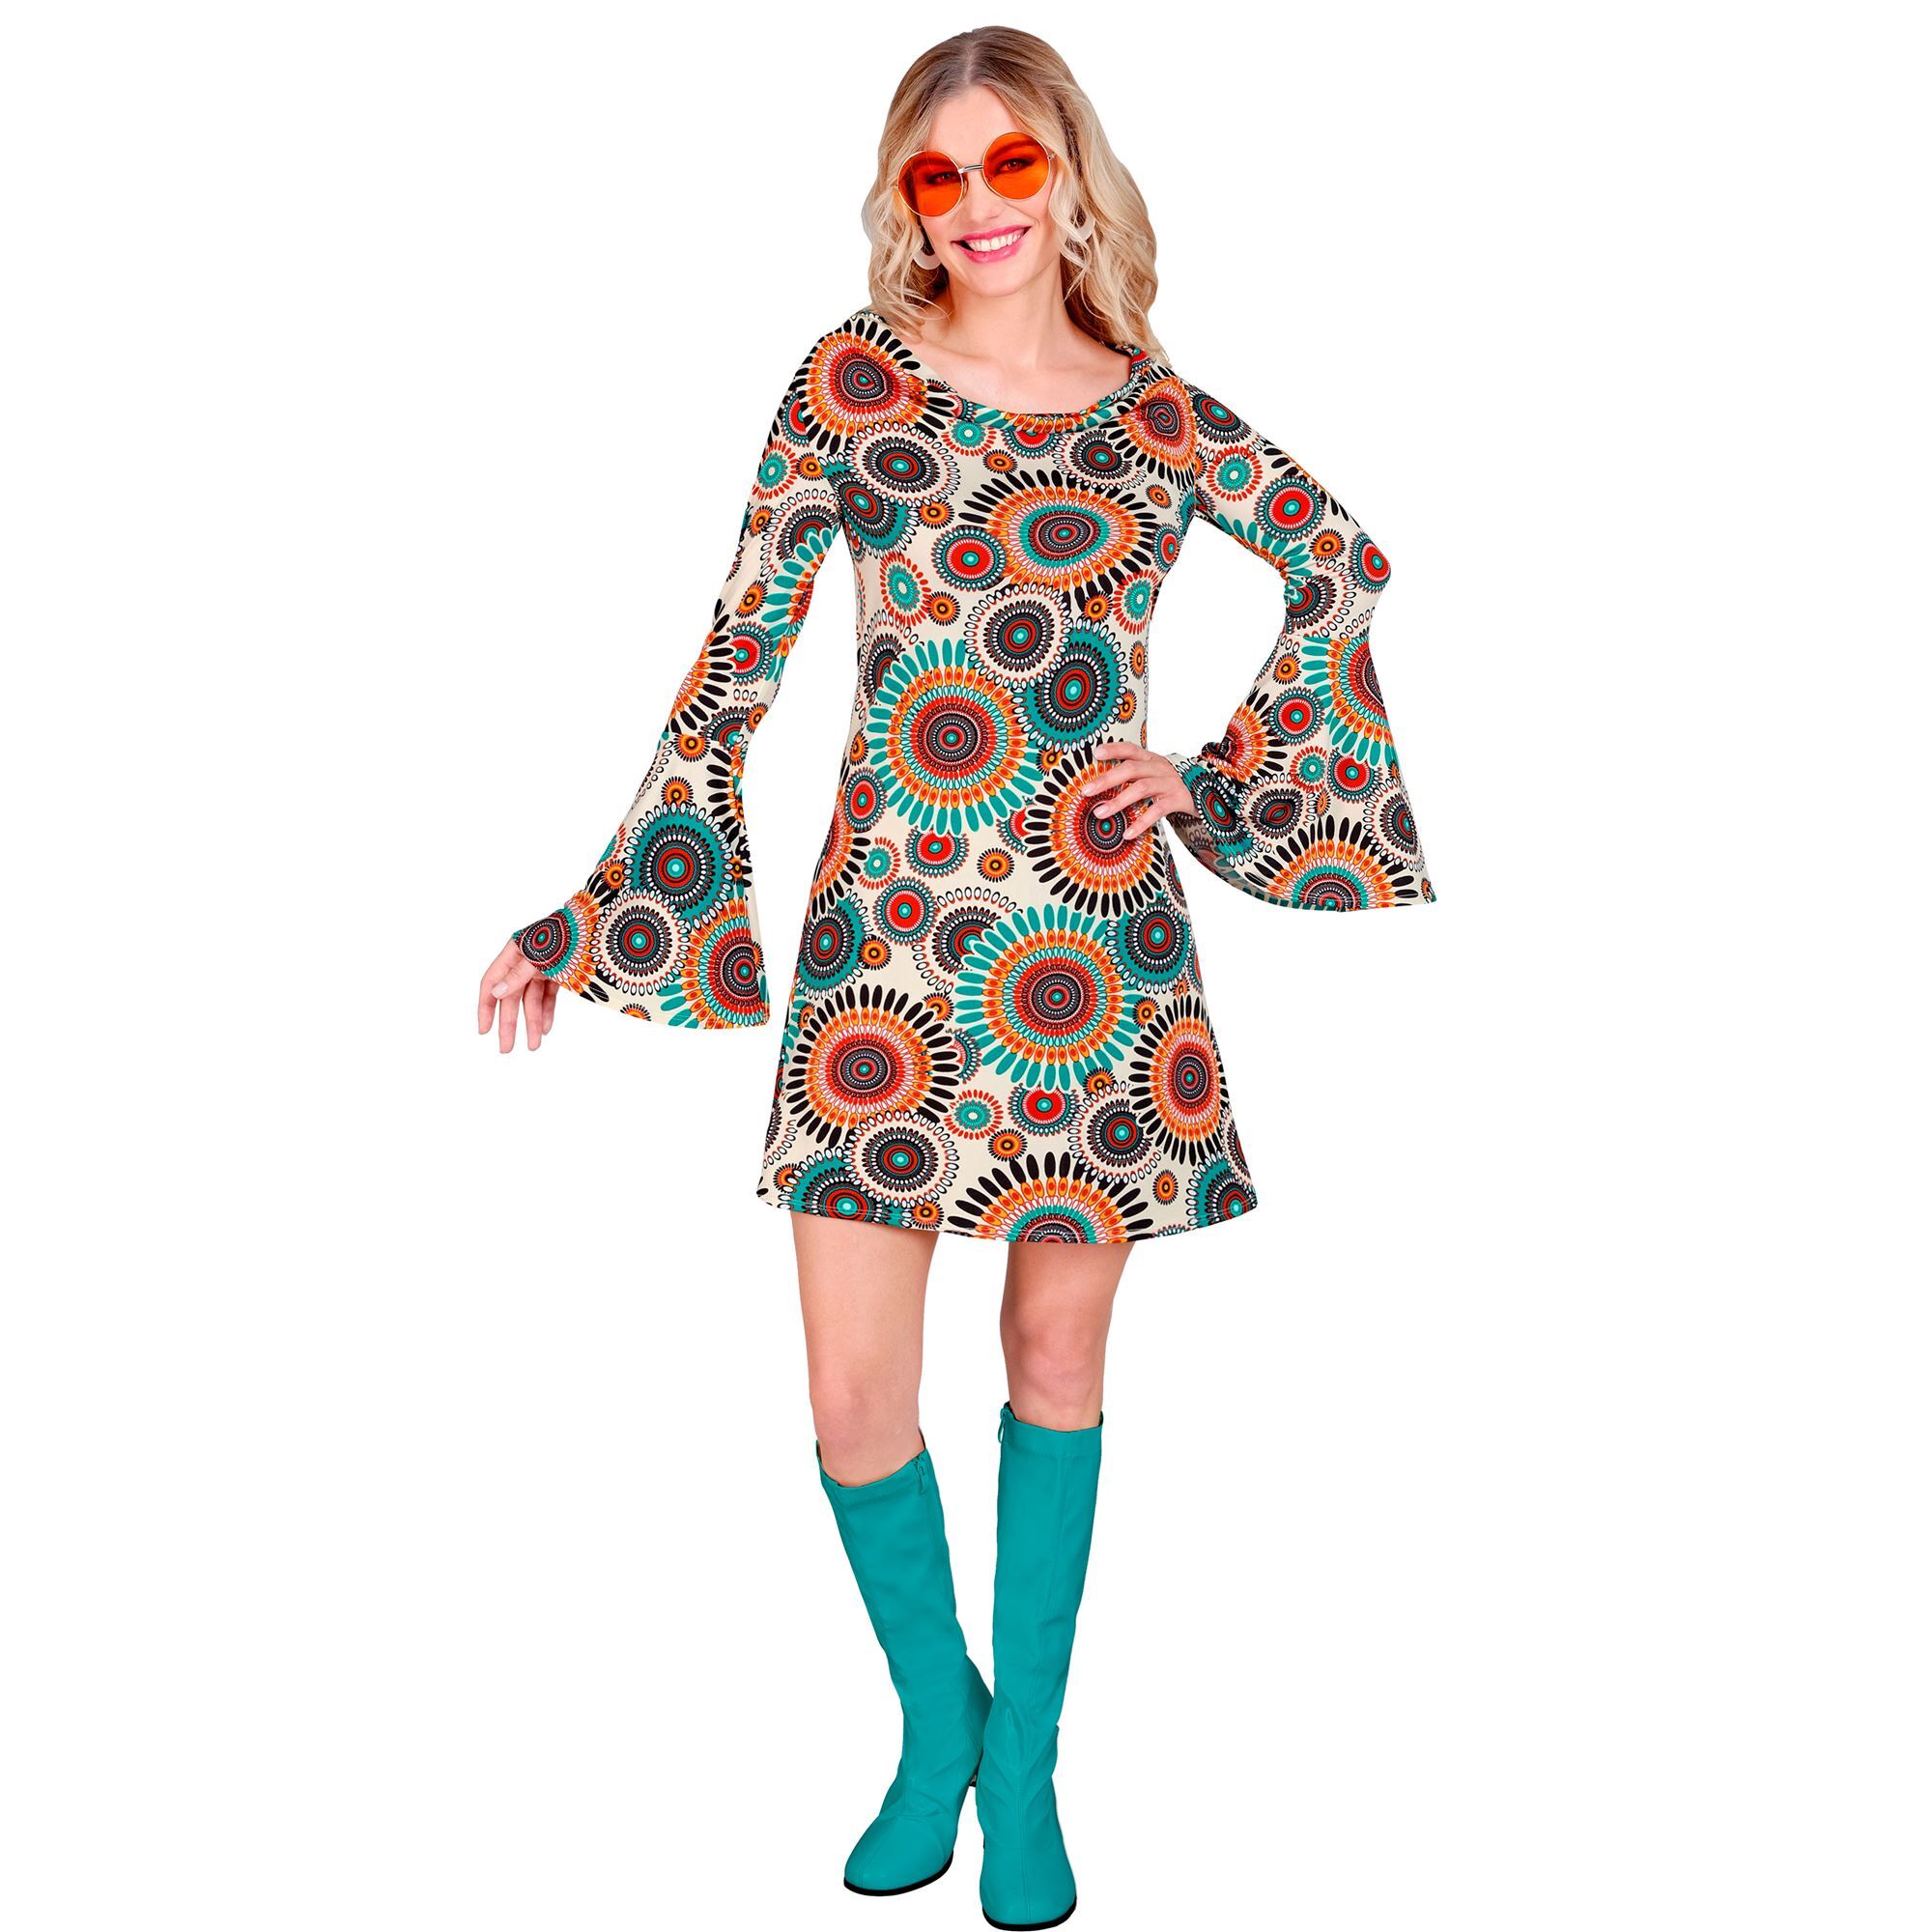 Betoverende retro chic vintage disco jurk uit de jaren 60 voor dames